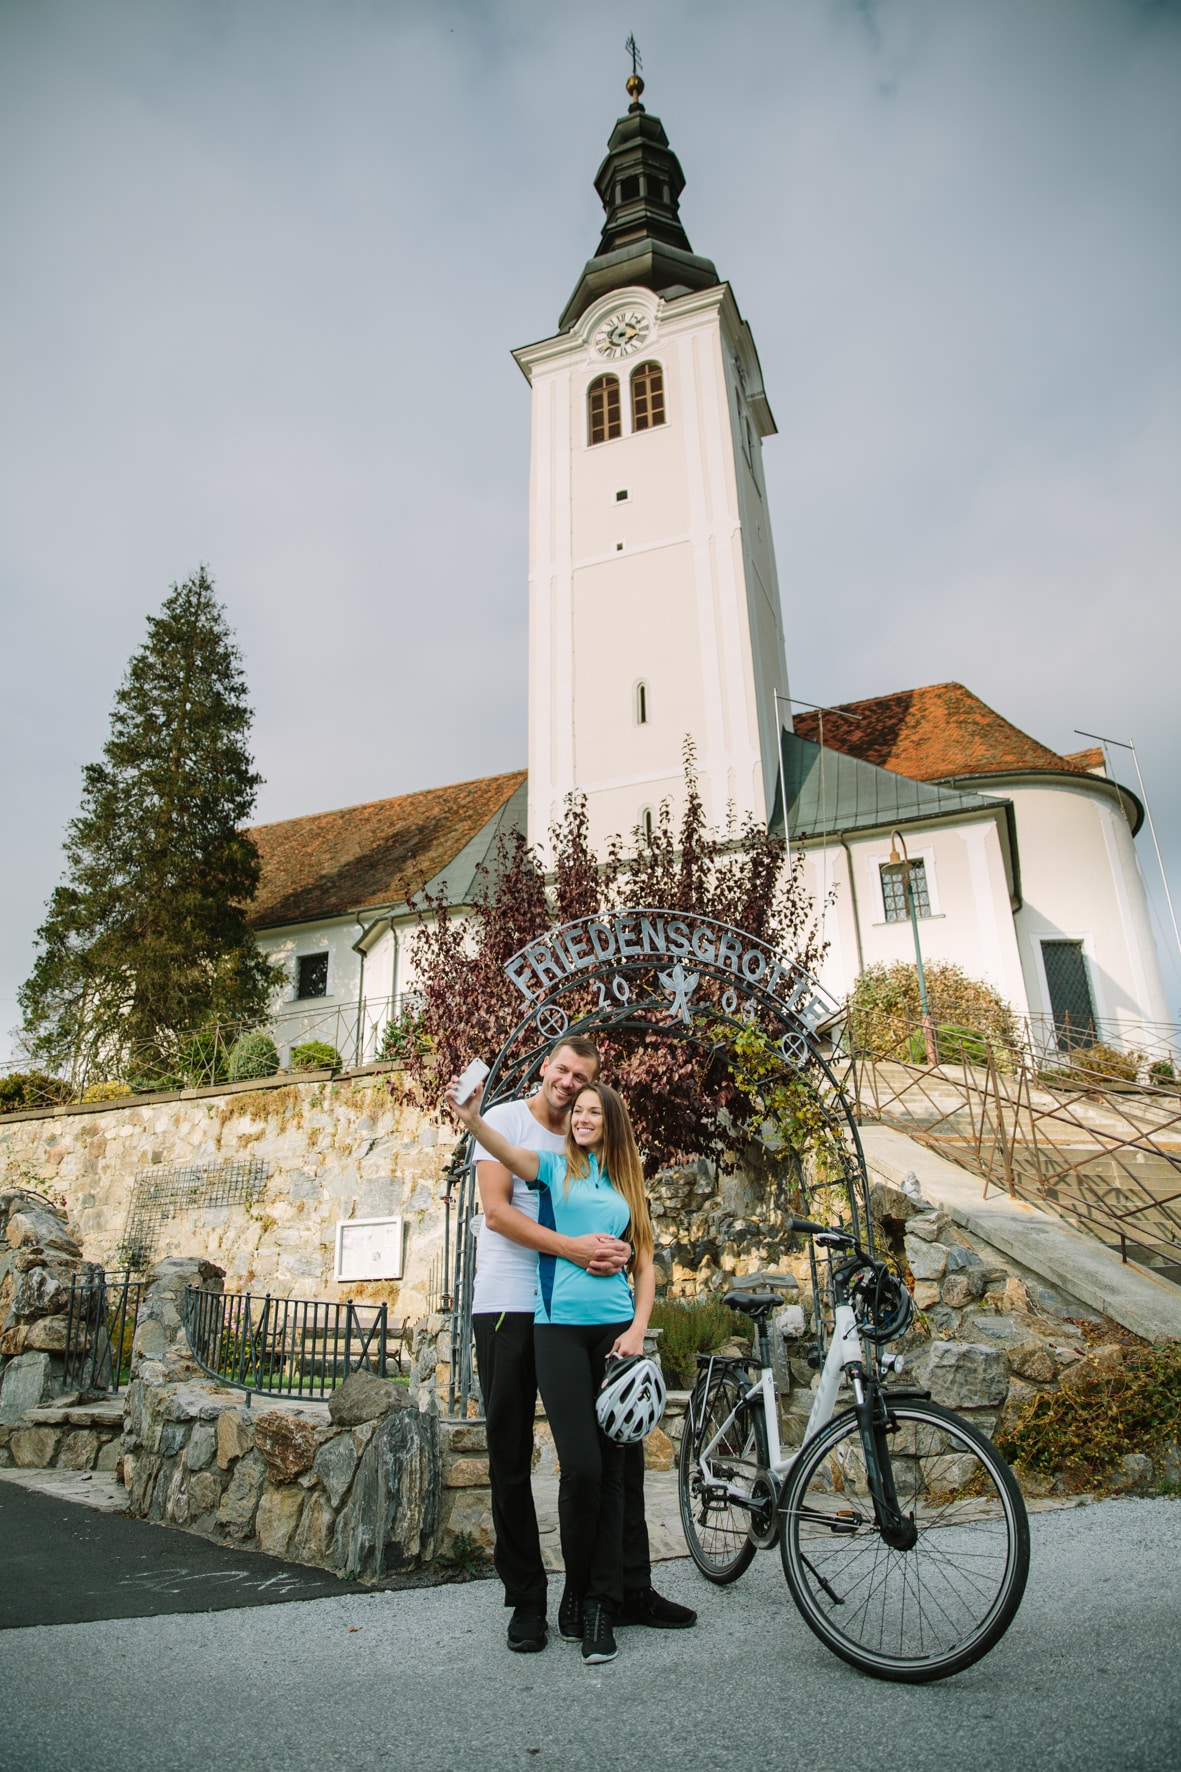 Eine weiße Kirche, und ein Paar mit Fahrrad davor